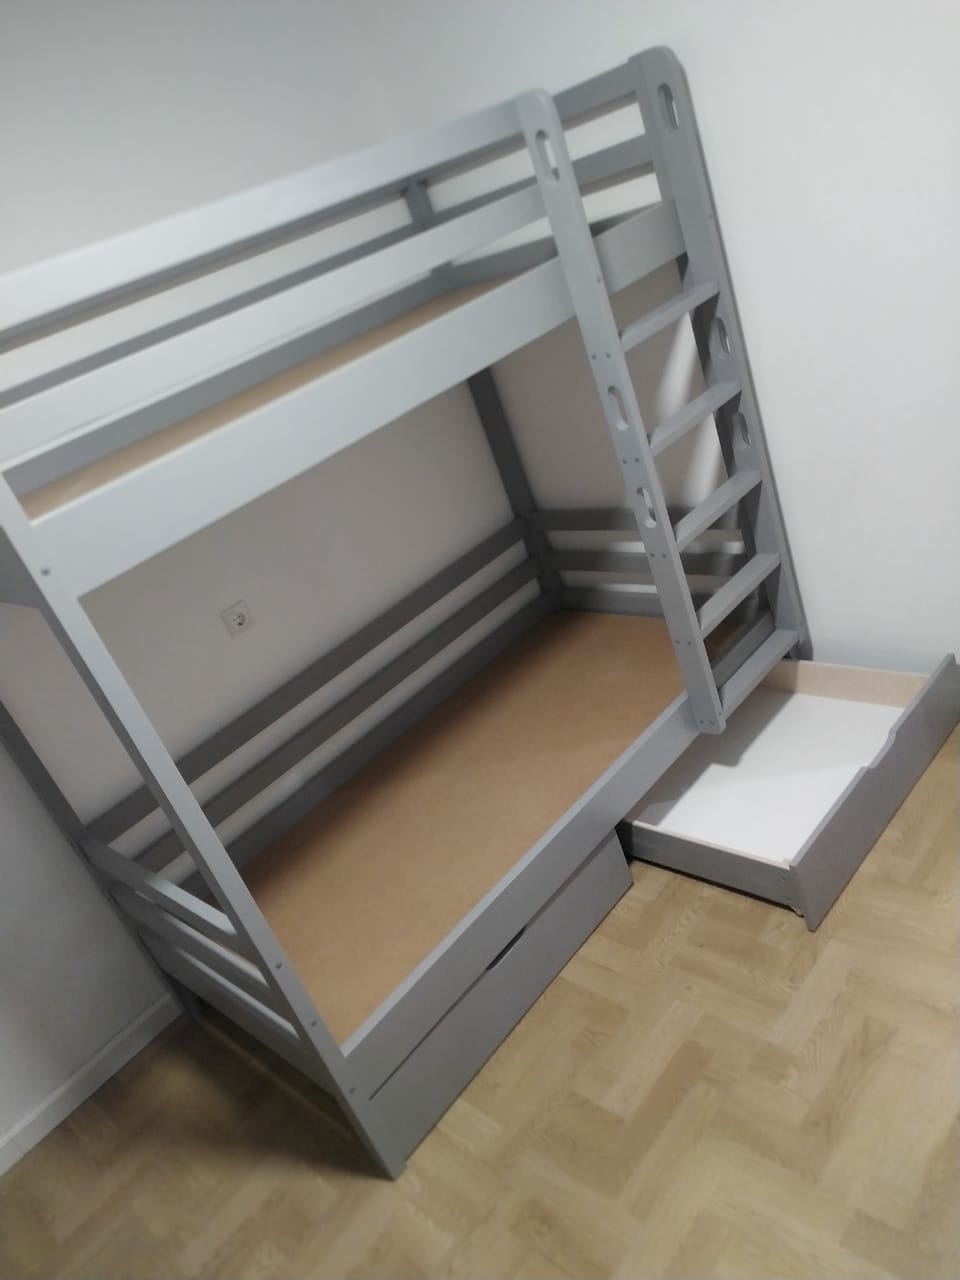 Двухъярусная деревянная кровать Vita Mia Корсар-2, 90x180см, Цвет RAL 7004 Сигнальный серый